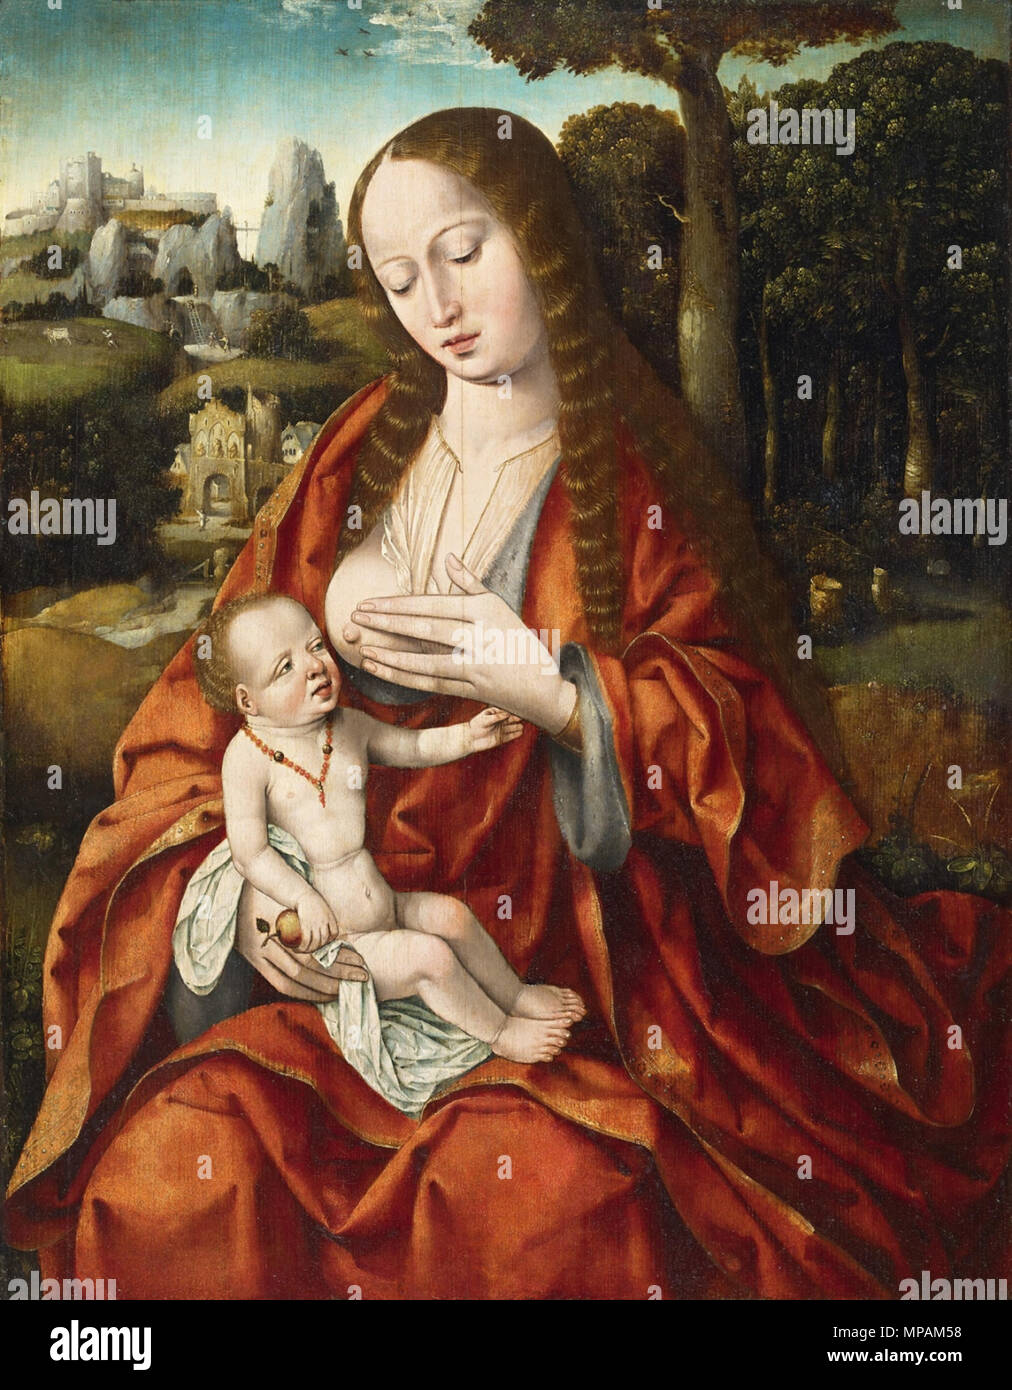 . Madonna mit Kind. Öl auf Eichenholz. 67,9 x 53 cm . circa 1520. Meister des Heiligen Blutes 881 Meister des Heiligen Blutes Madonna mit Kind Stock Photo